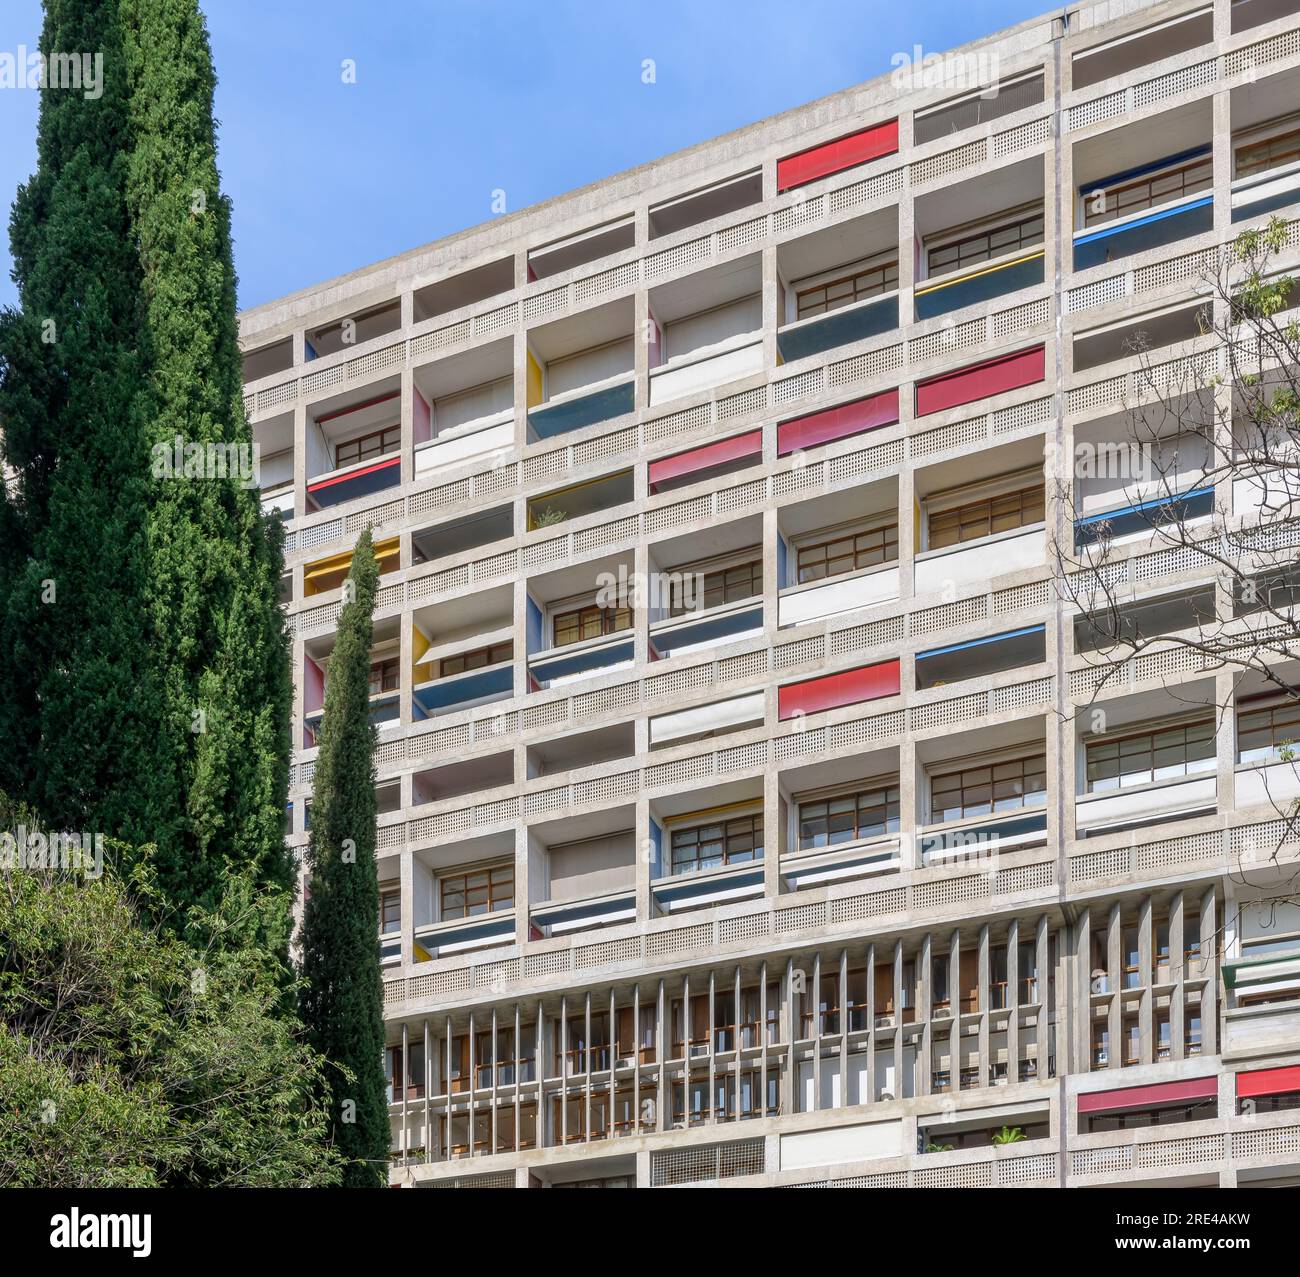 Un edificio classico del XX secolo. Unité d'Habitation di le Corbusier a Marsiglia. L'edificio è anche conosciuto come Cité radieuse le Corbusier. Foto Stock